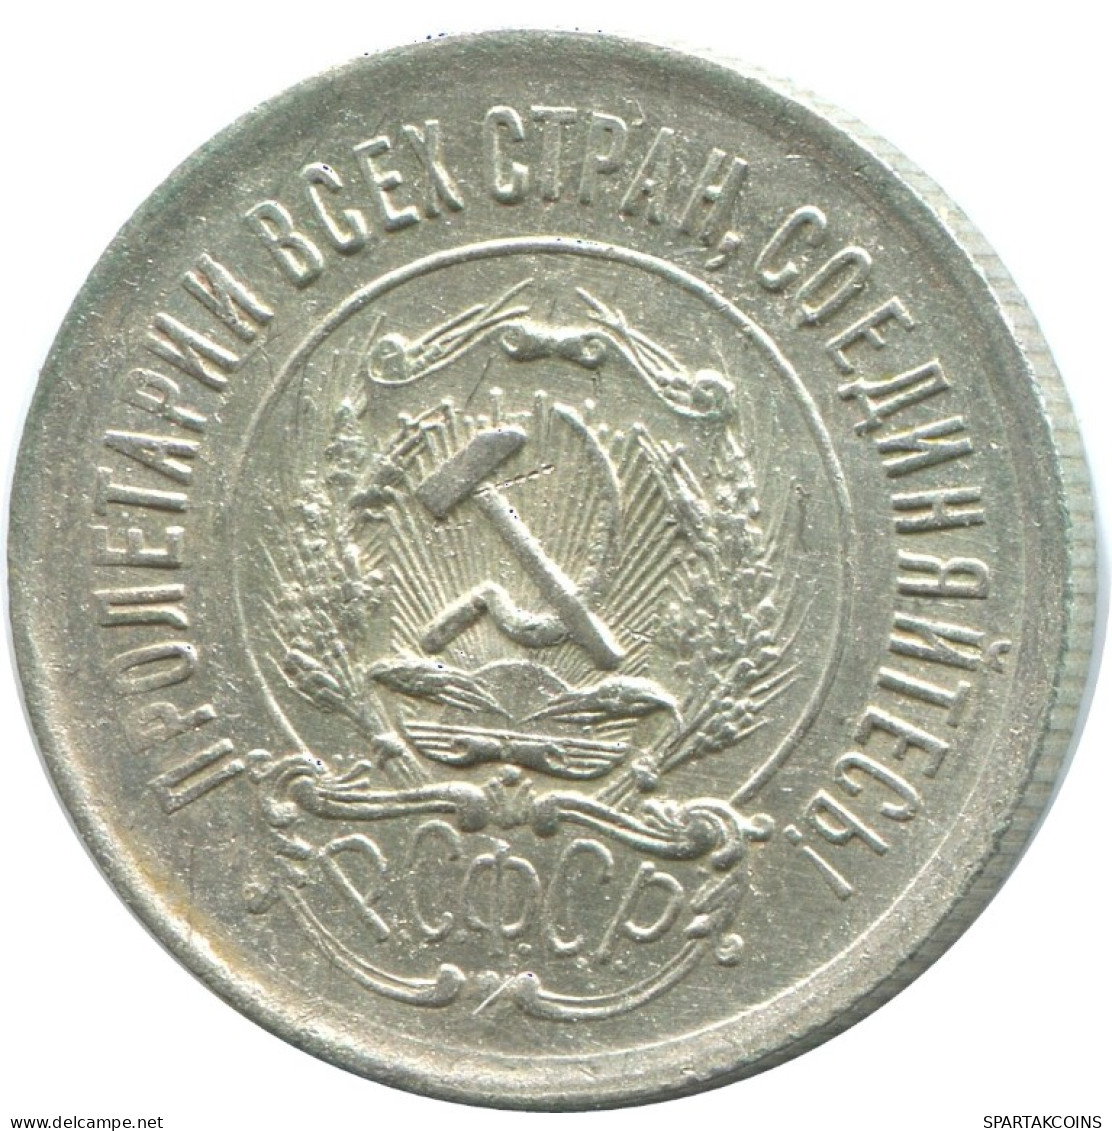 20 KOPEKS 1923 RUSSIA RSFSR SILVER Coin HIGH GRADE #AF361.4.U.A - Russland